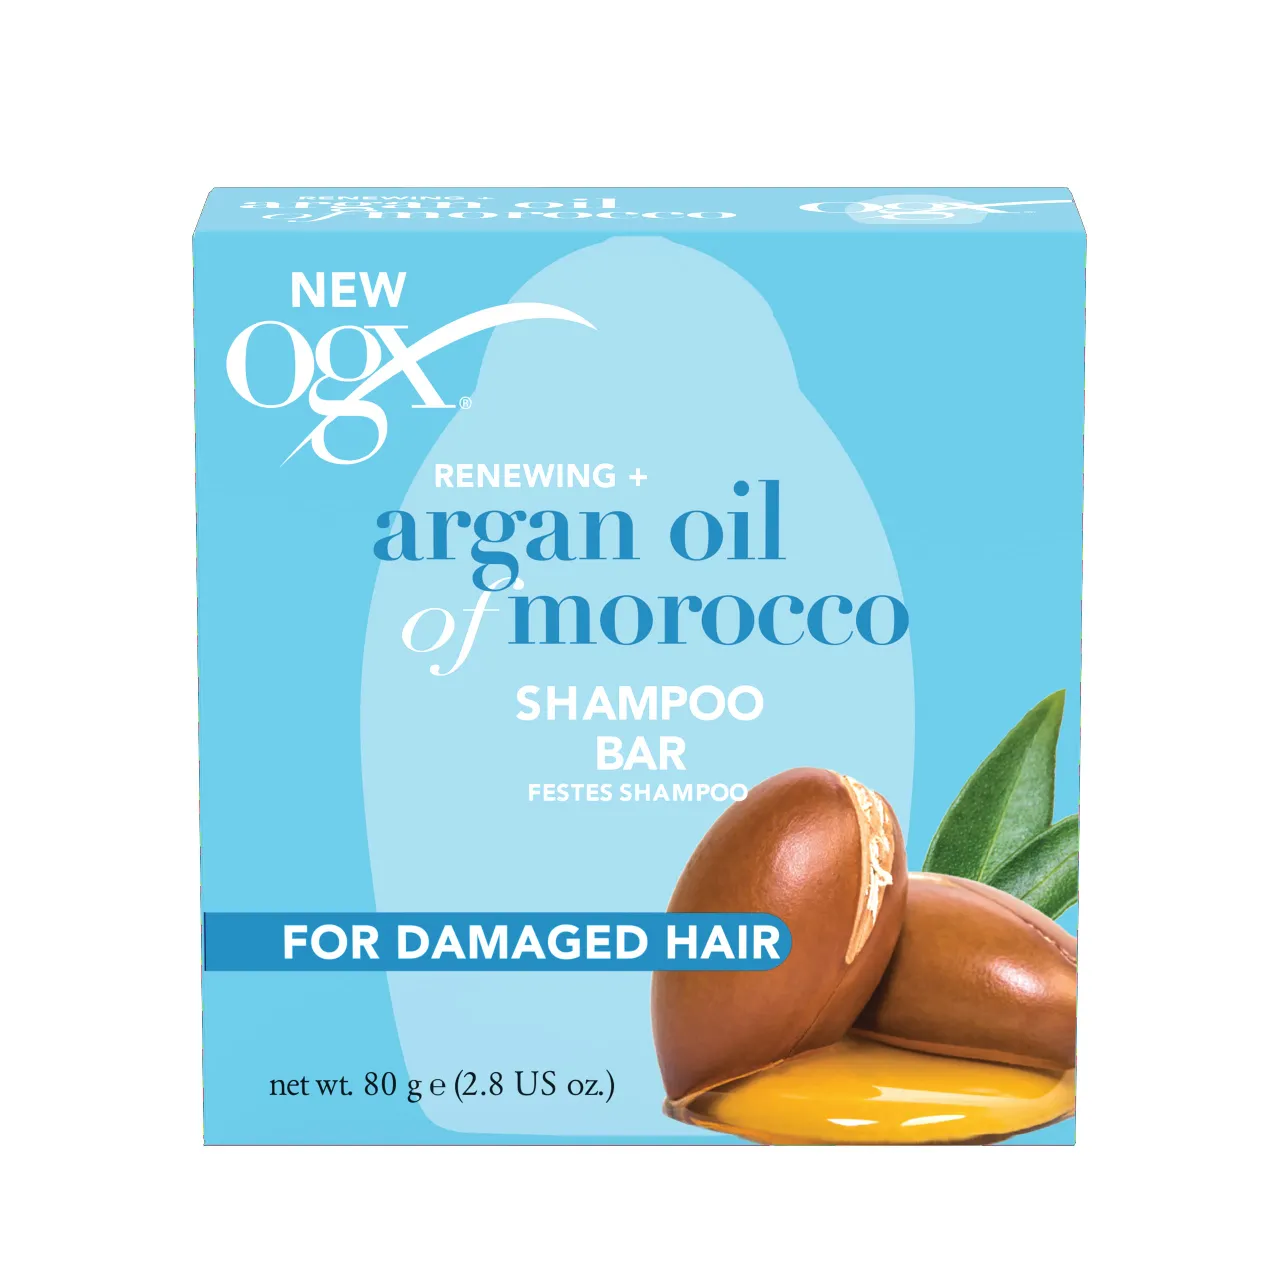 OGX Argan Oil of Morocco Festes Shampoo (80g)